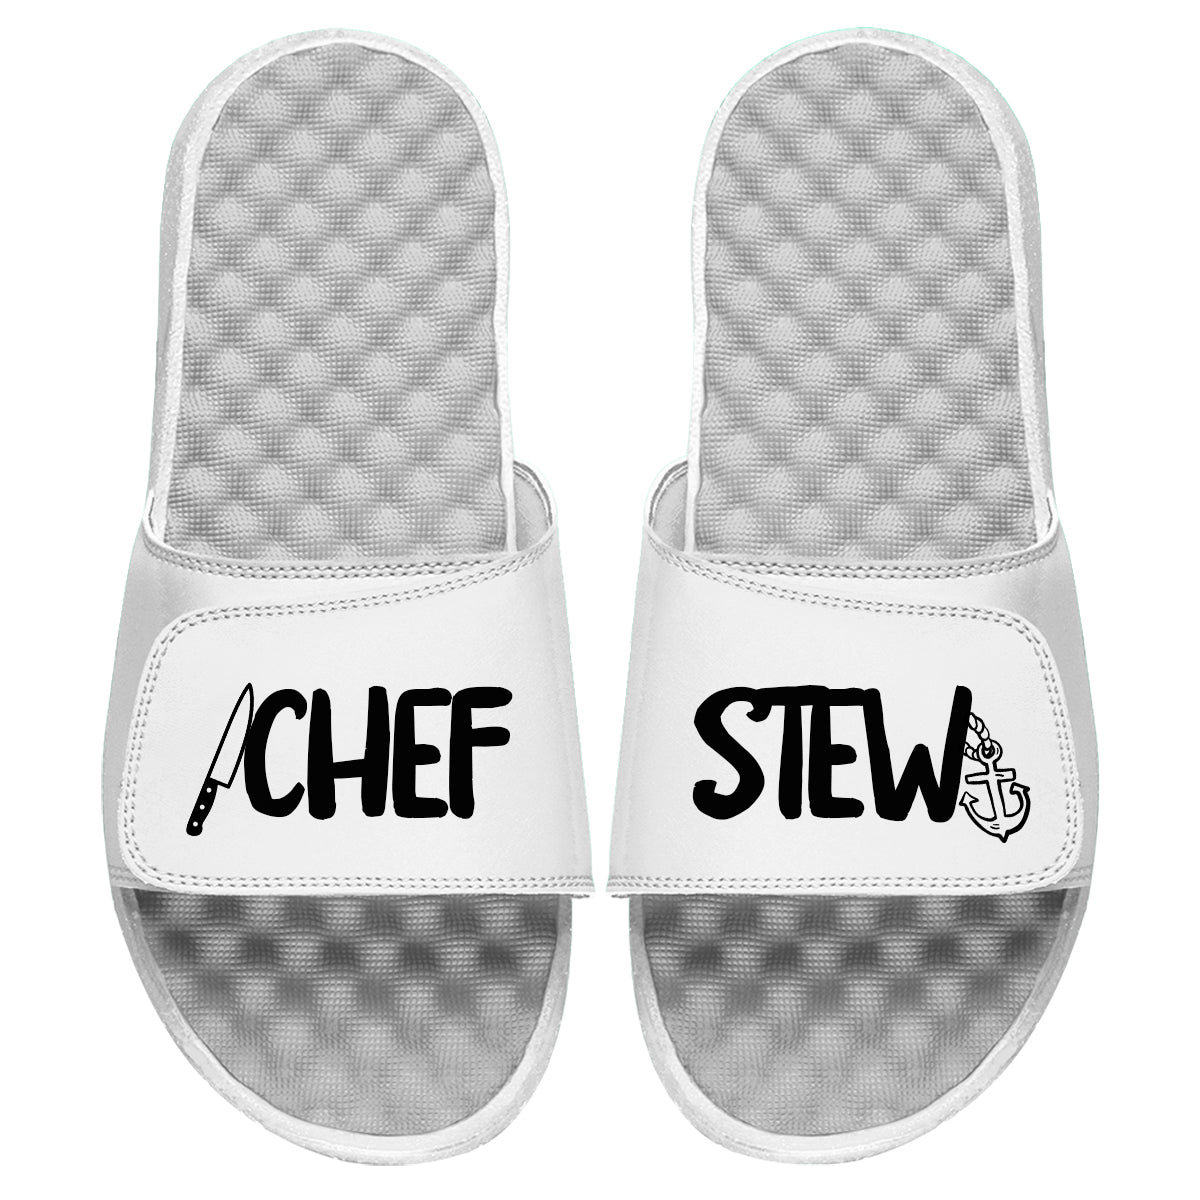 Chef Stew Slides